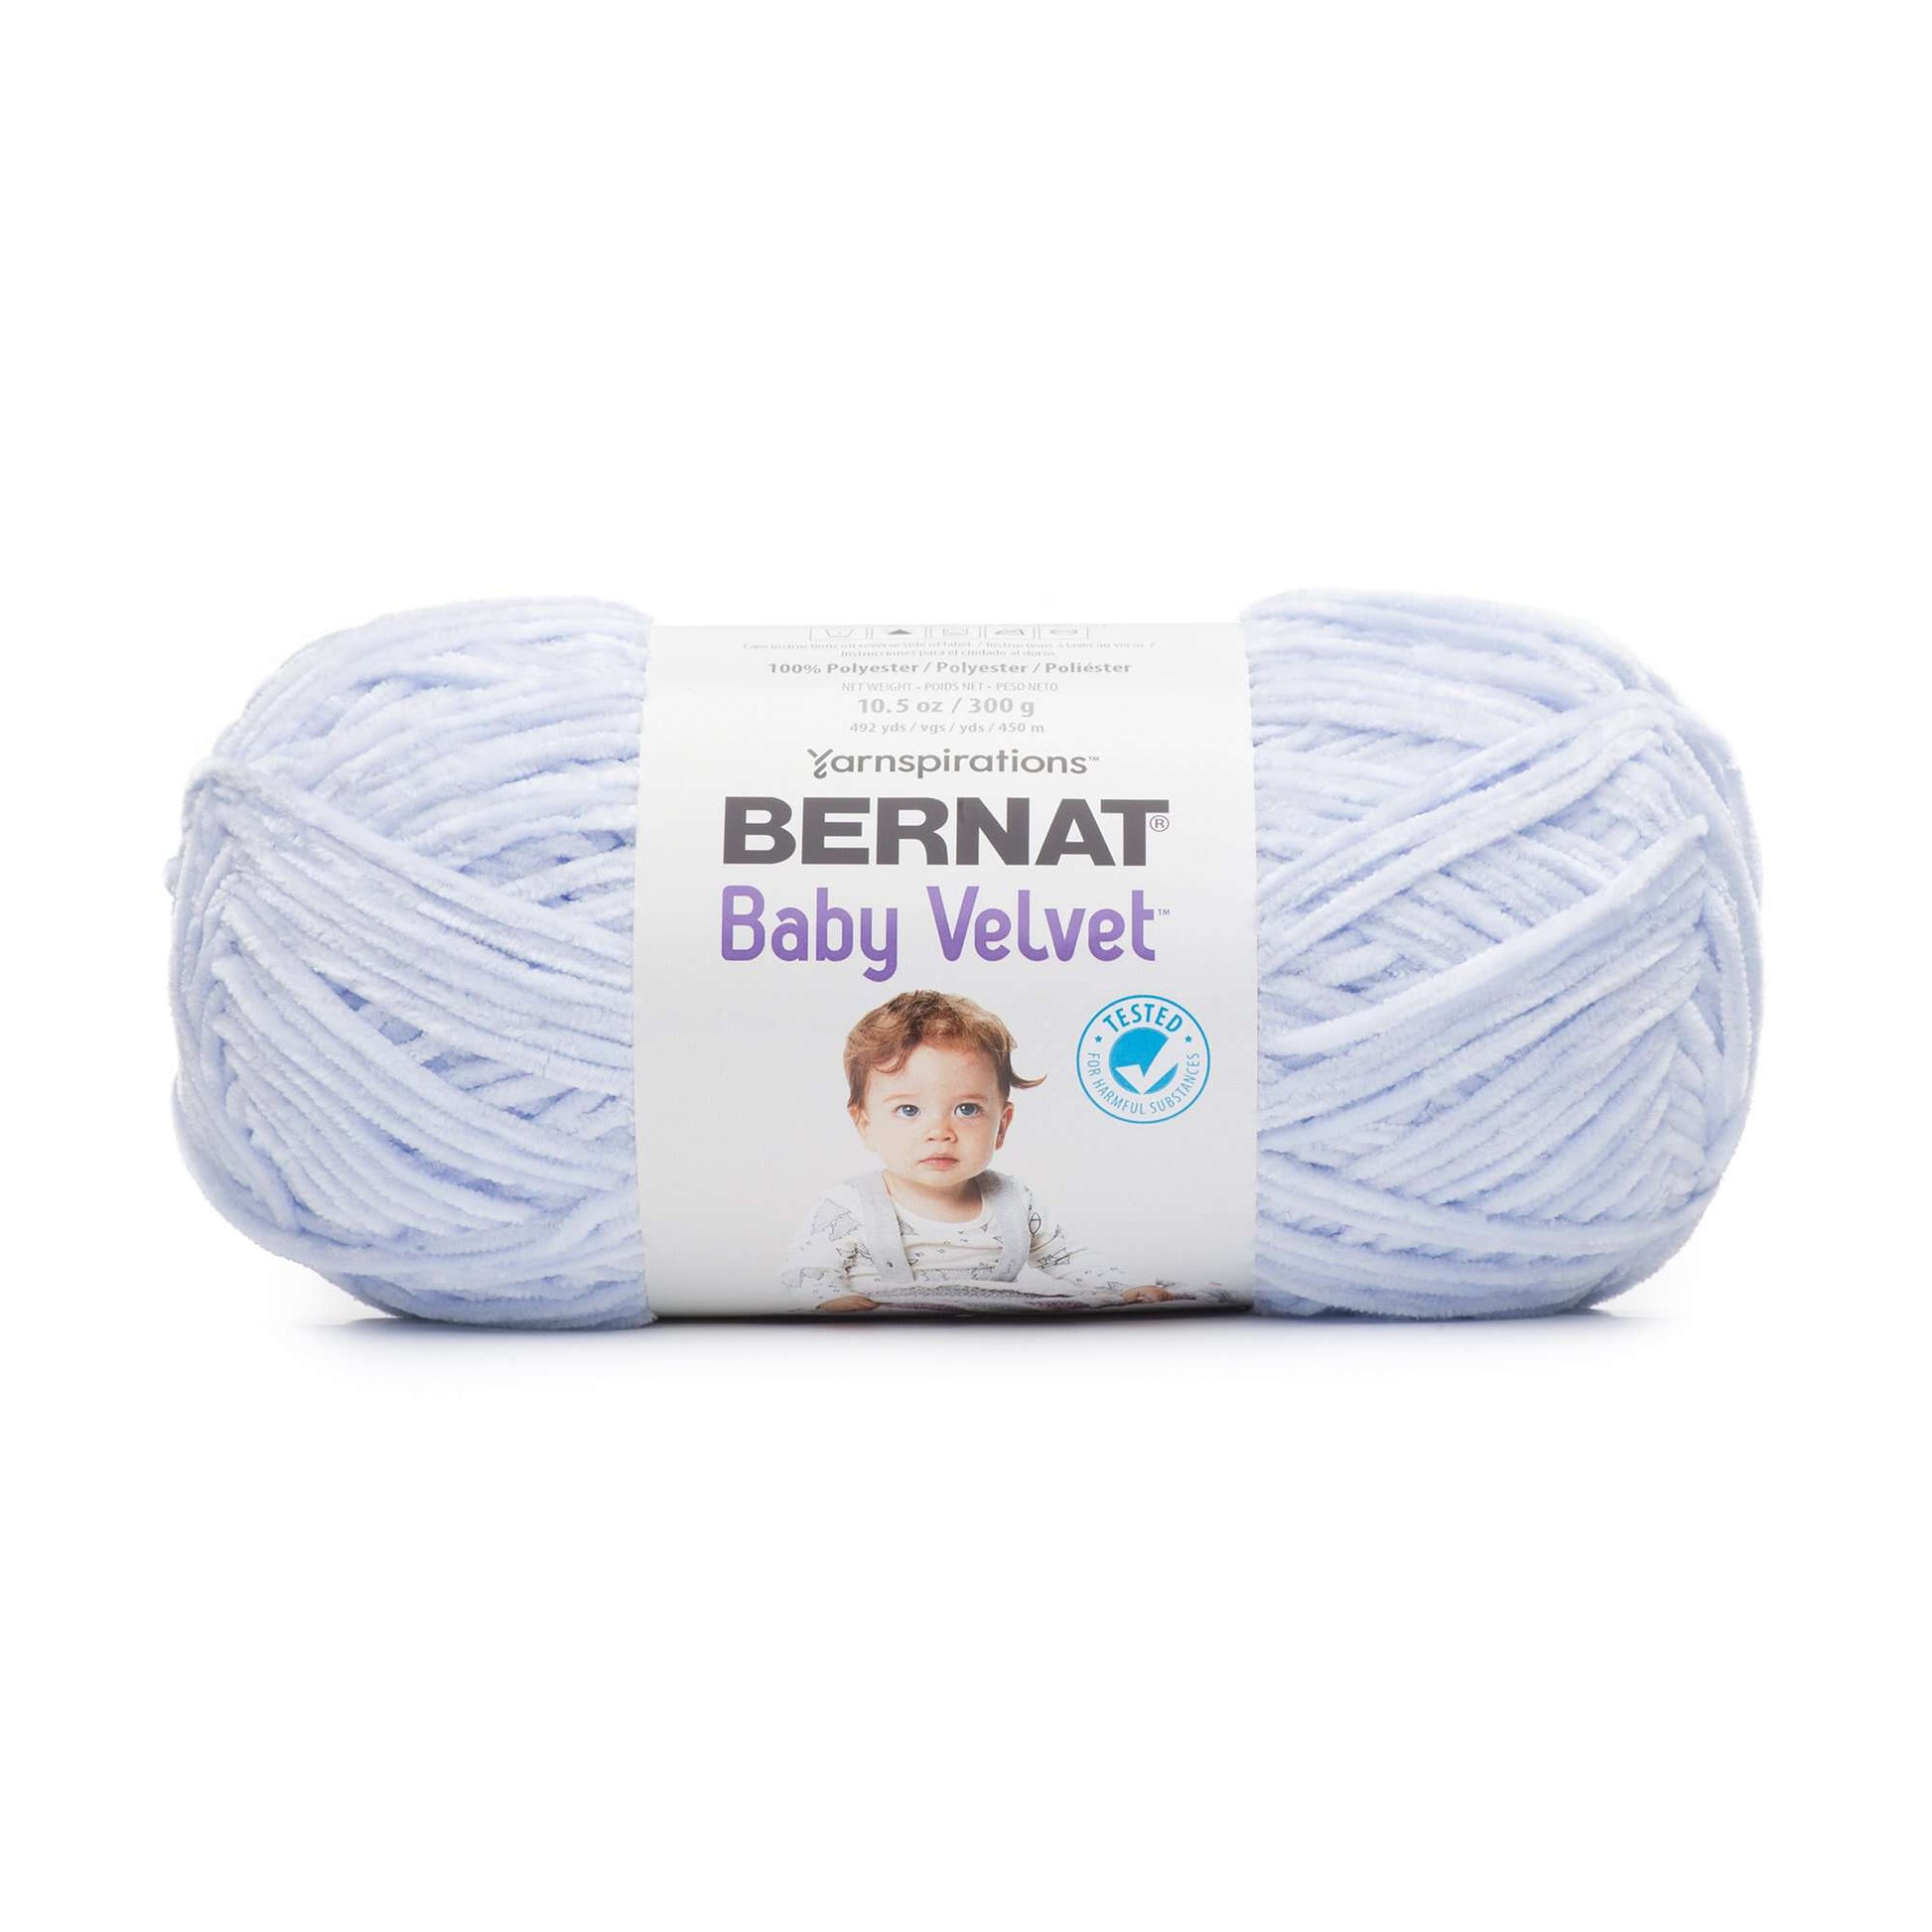 Bernat Baby Velvet Yarn - Baby Blanket Crochet Pattern